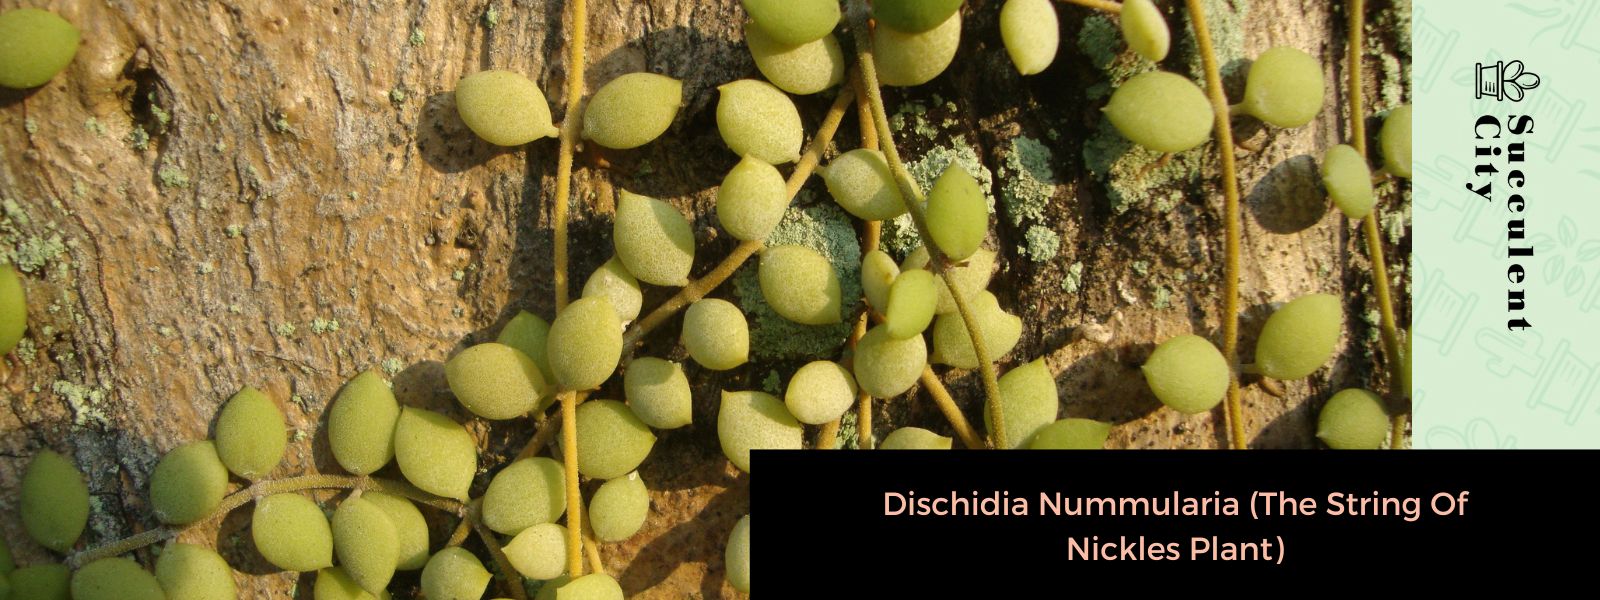 Dischidia Nummularia (La planta del cordón de níquel)